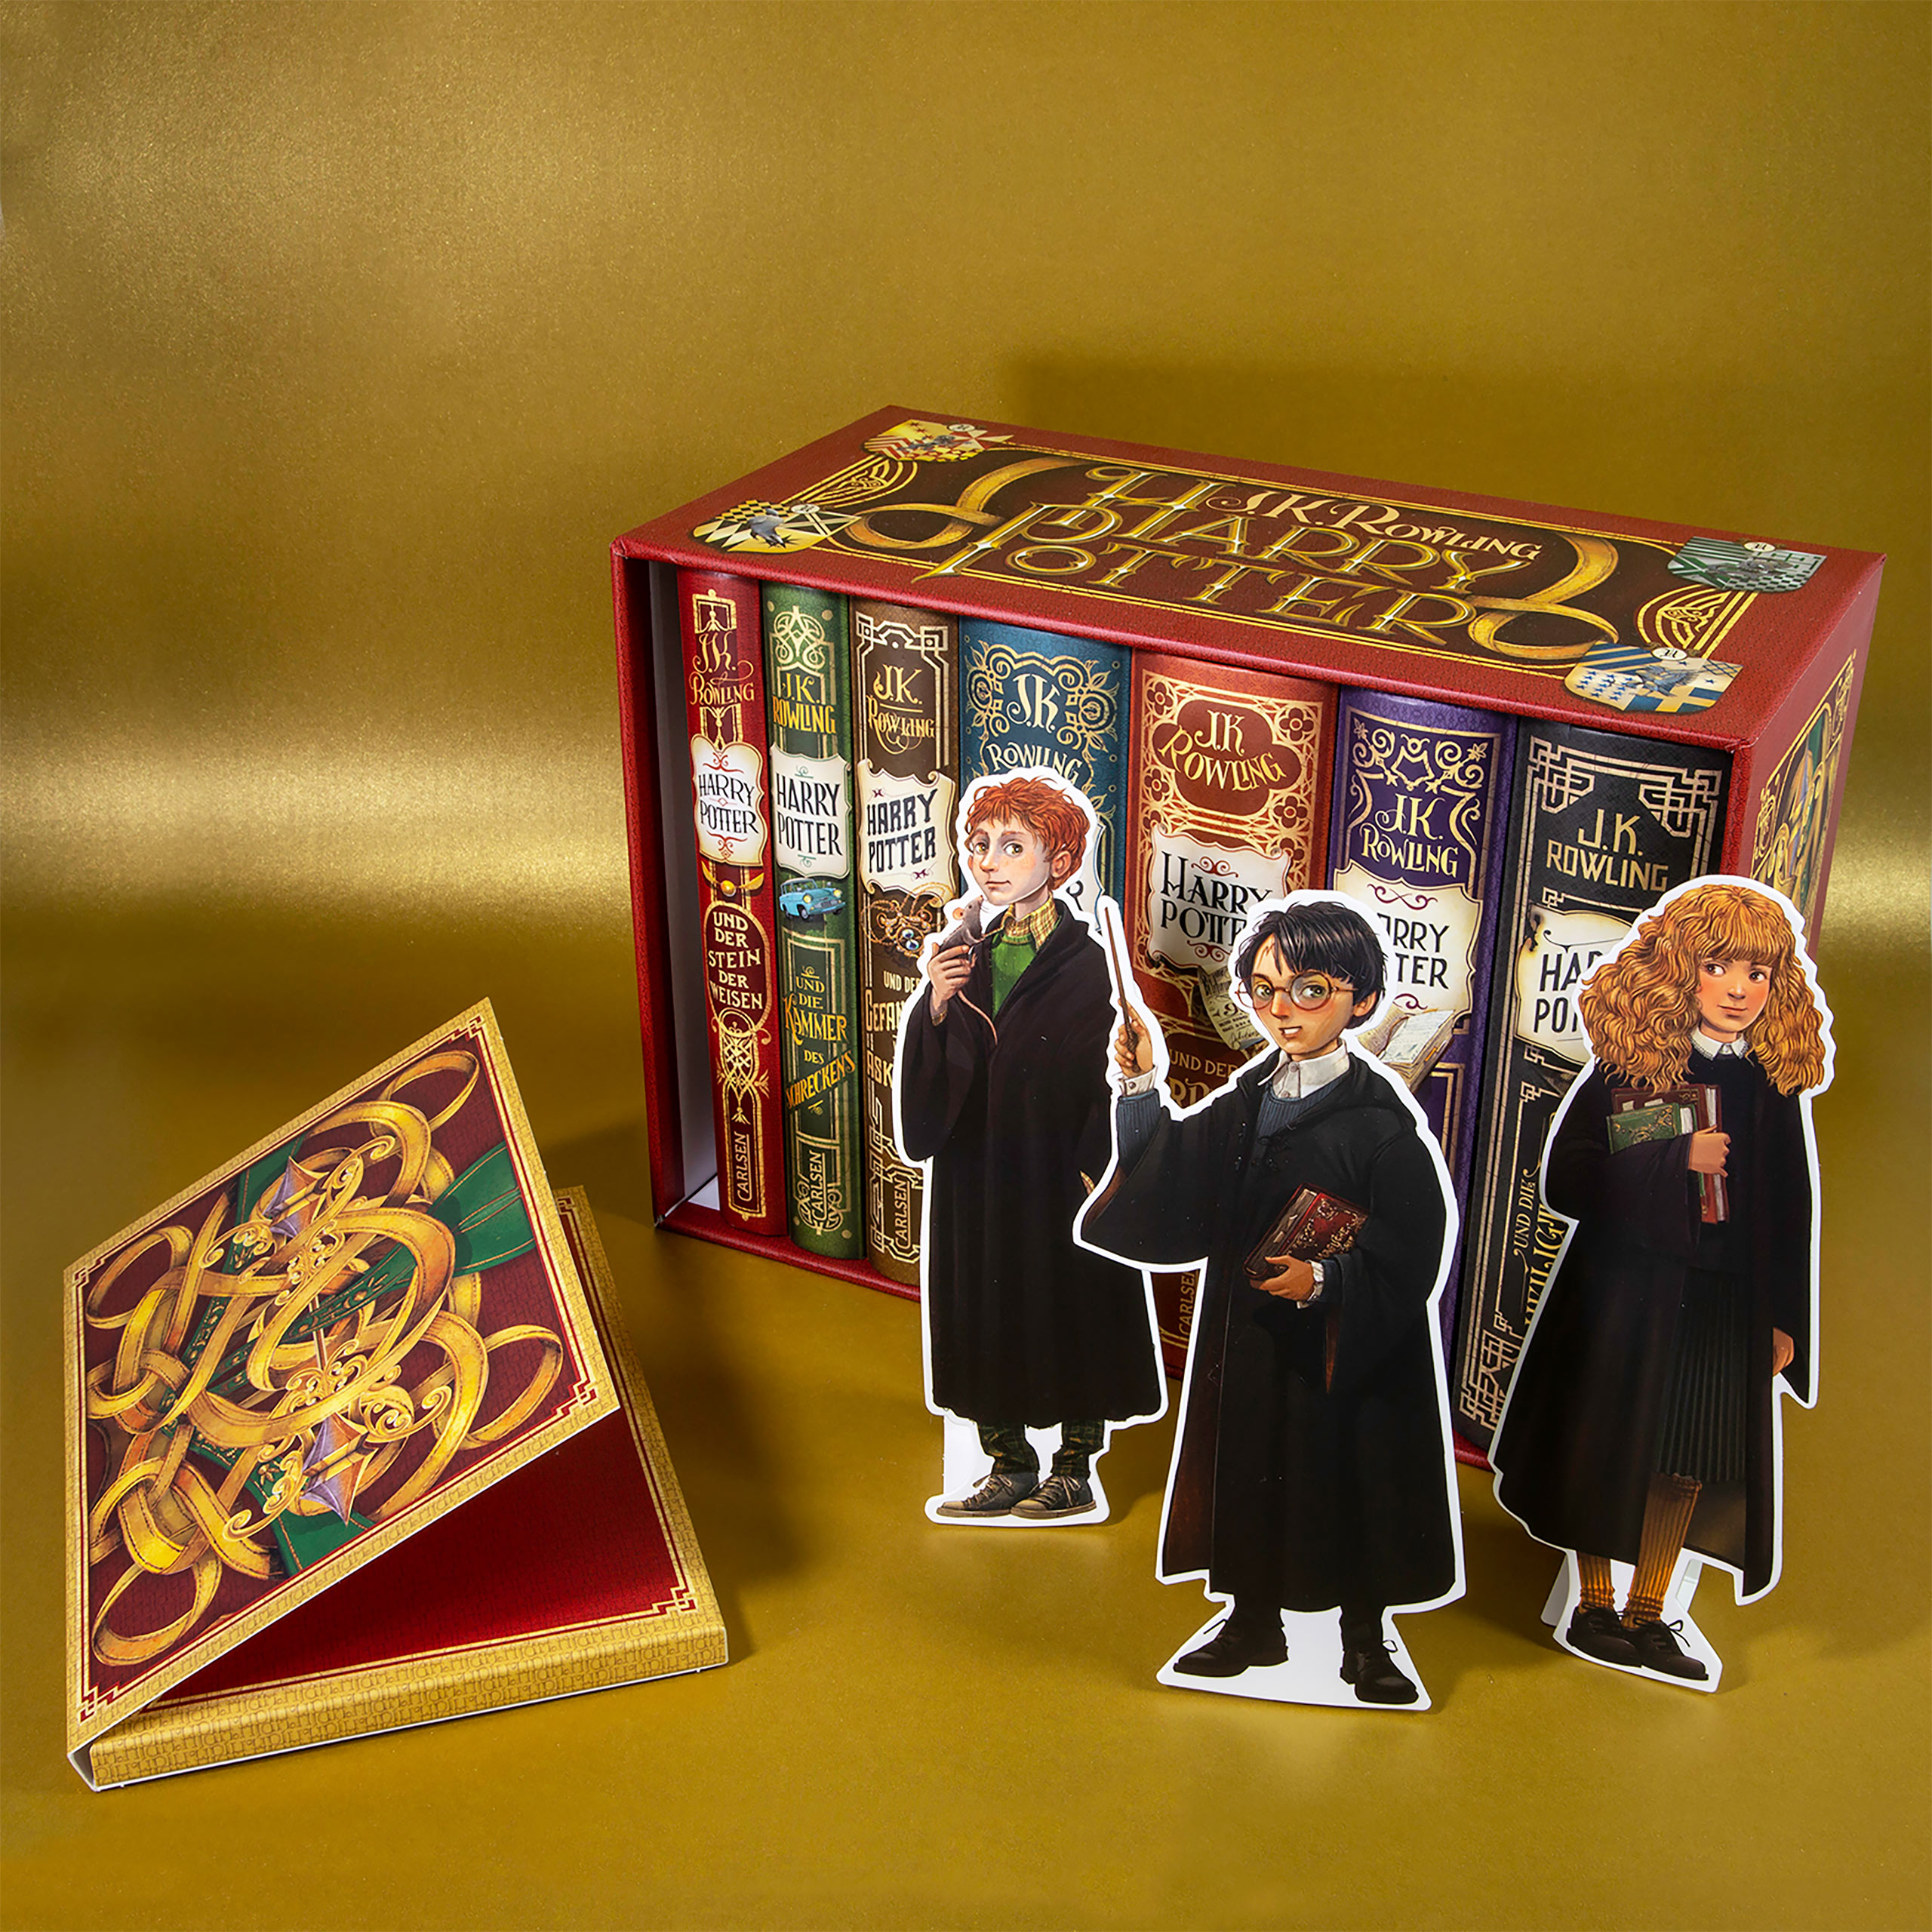 Harry Potter - Delen 1-7 in Box Set met Exclusieve Extra